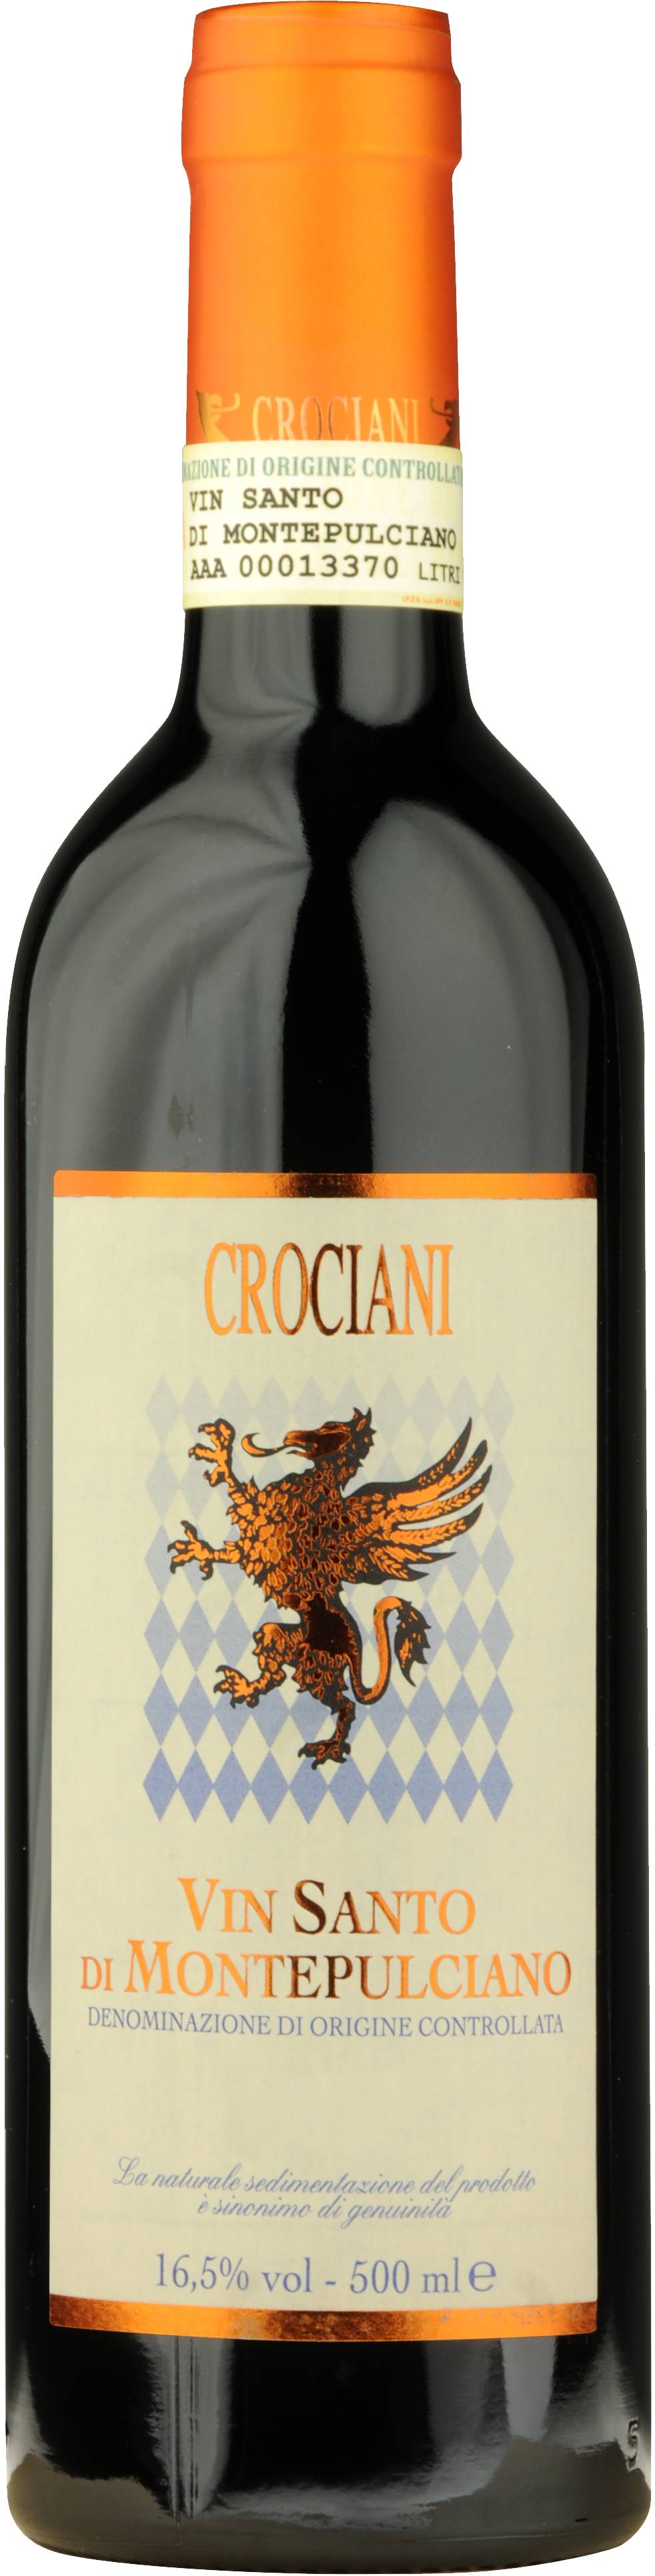 Crociani Vin Santo di Montepulciano DOC  2016